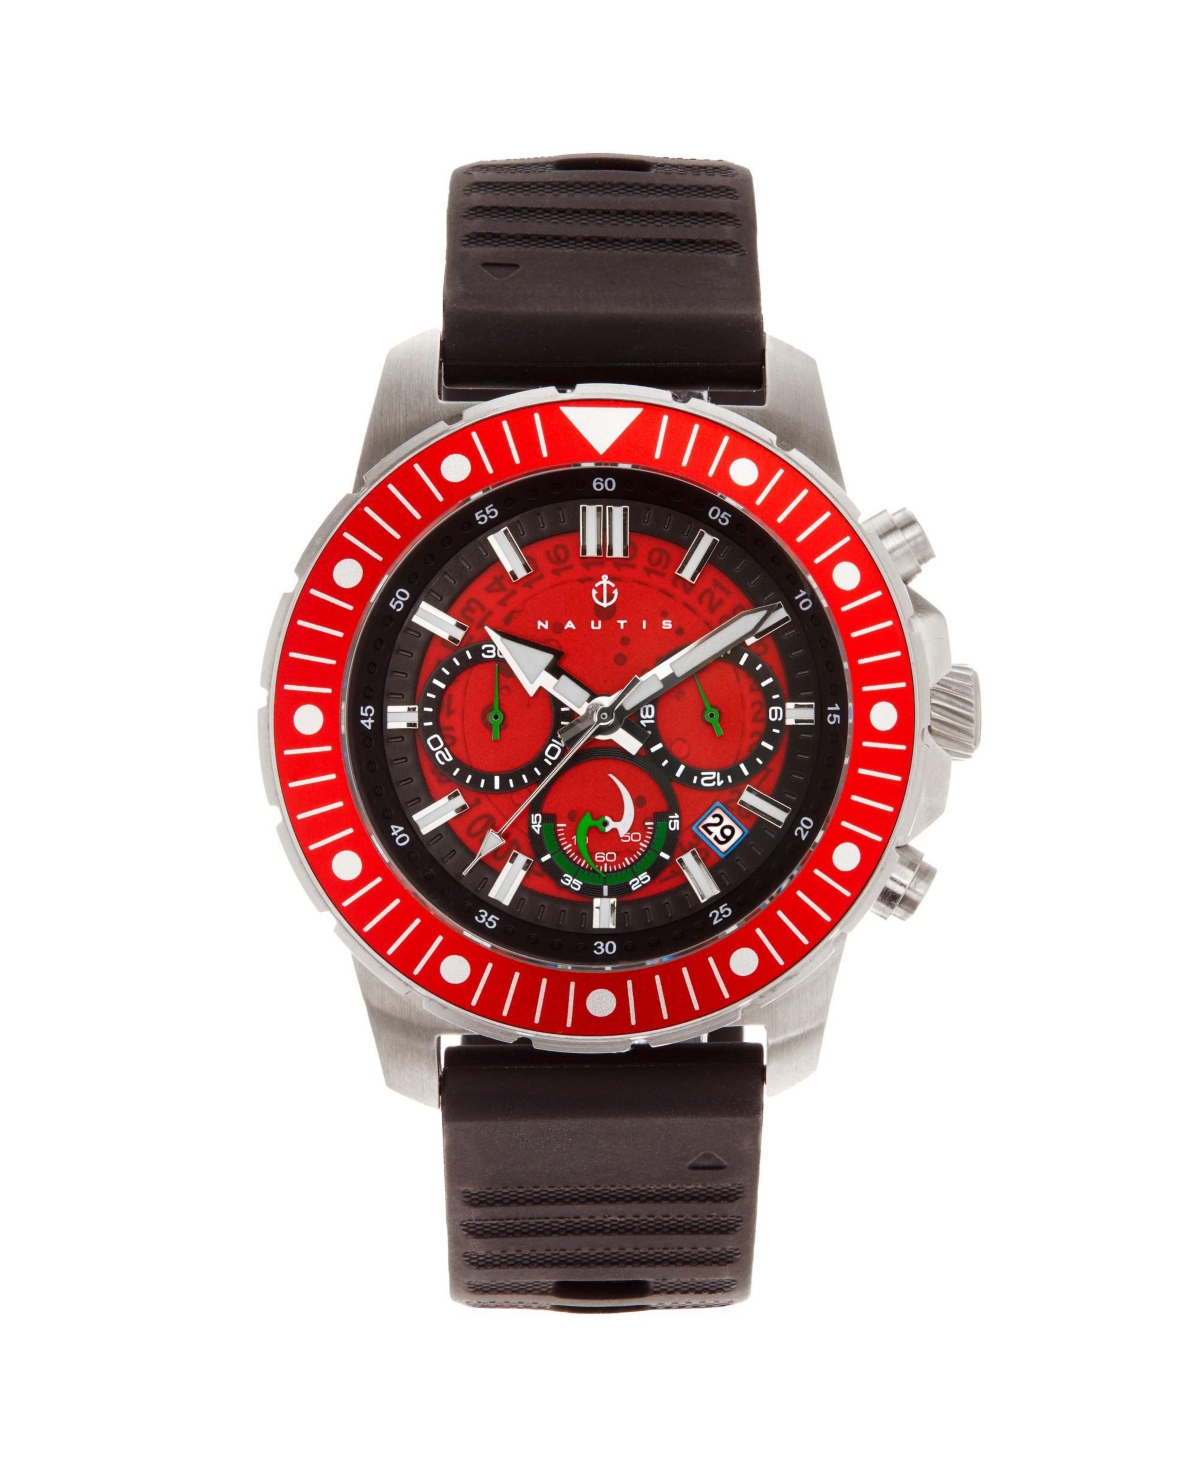 Men Caspian Rubber Watch - Black/Red, 45mm - Black/red